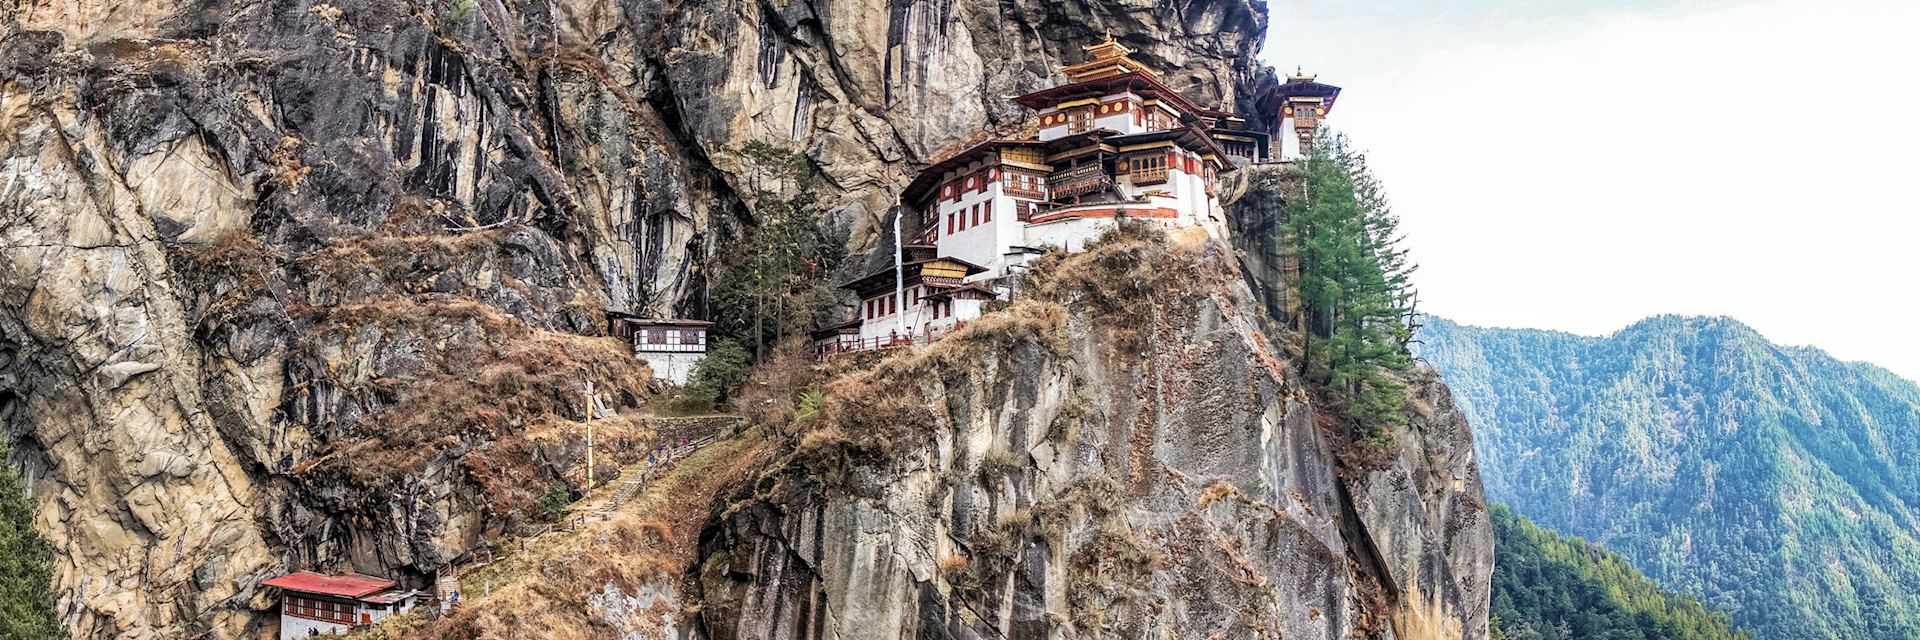 Taktshang Goemba or Tiger's Nest Monastery, Bhutan